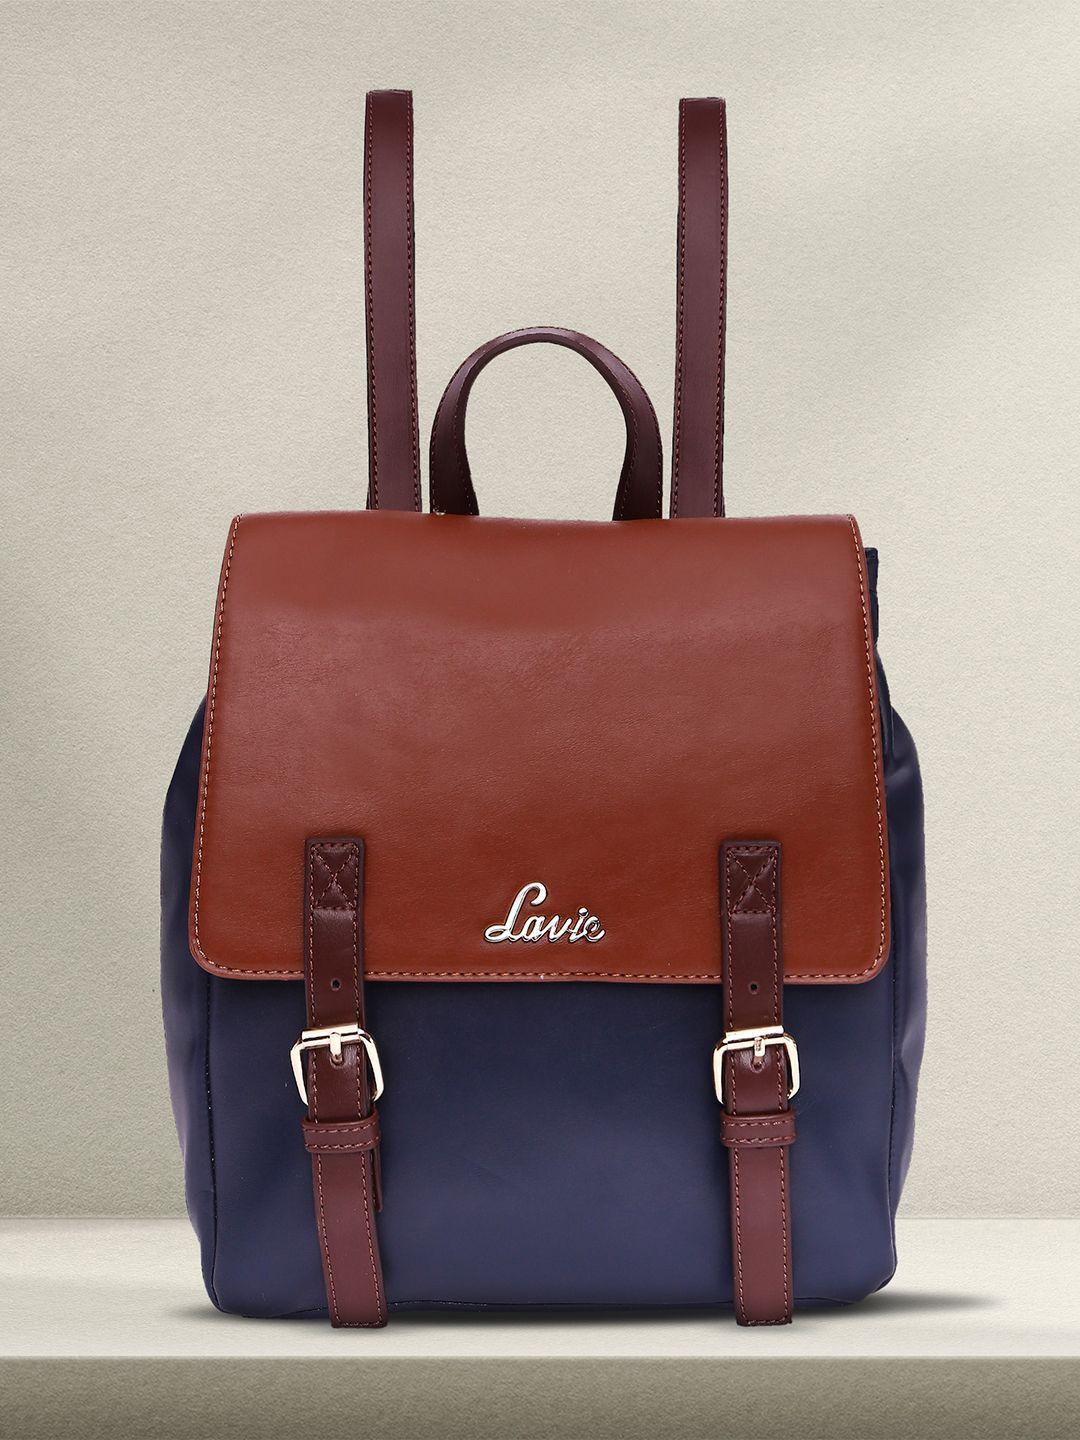 lavie oleo women brown & navy blue colourblocked backpack